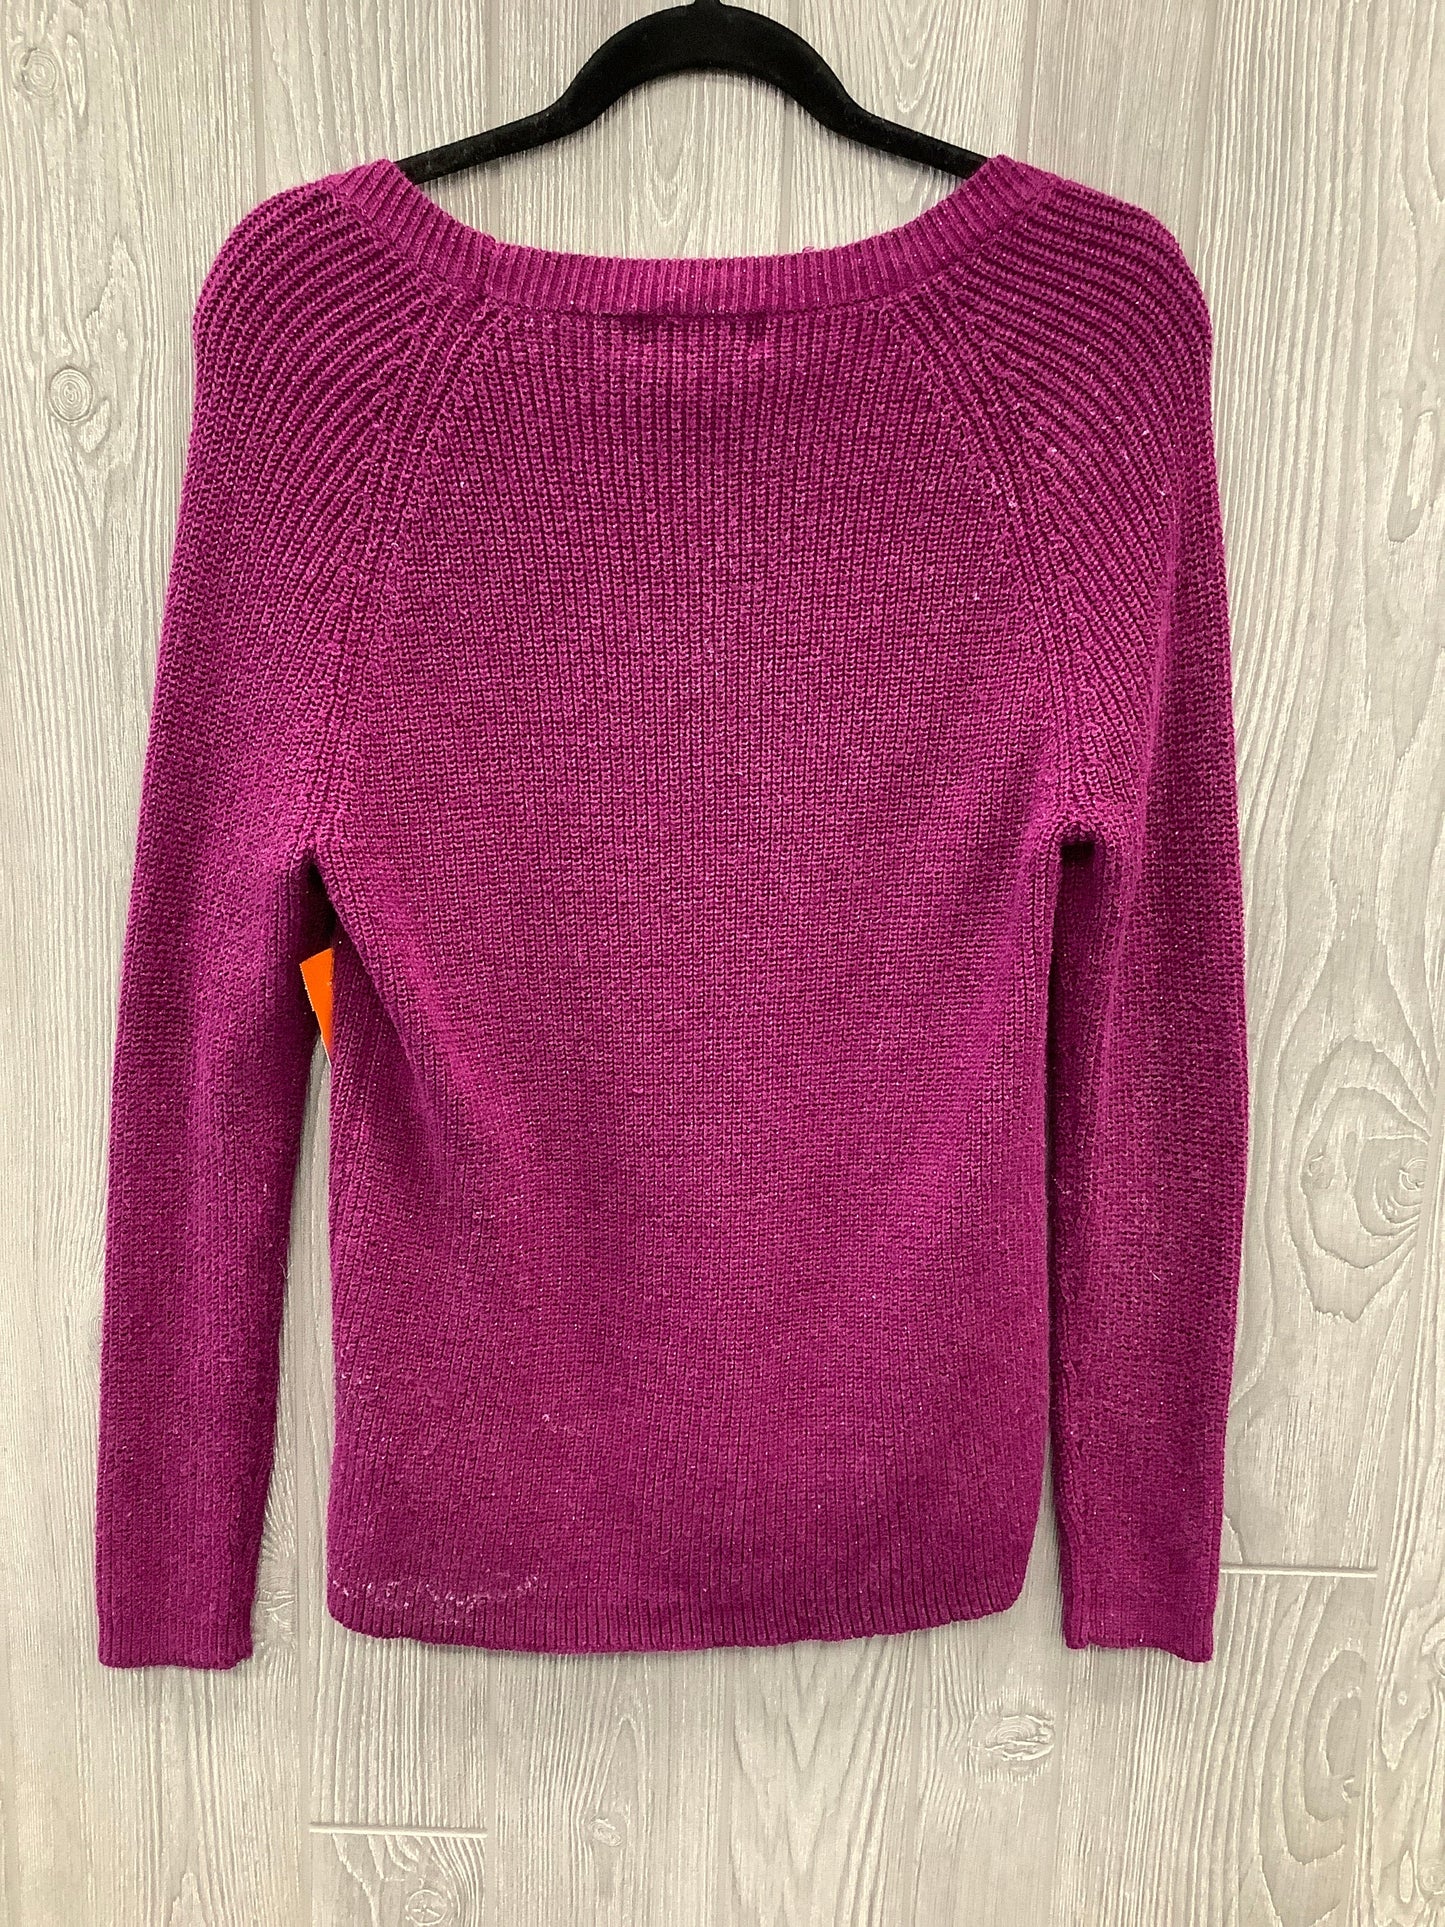 Sweater By Liz Claiborne  Size: L